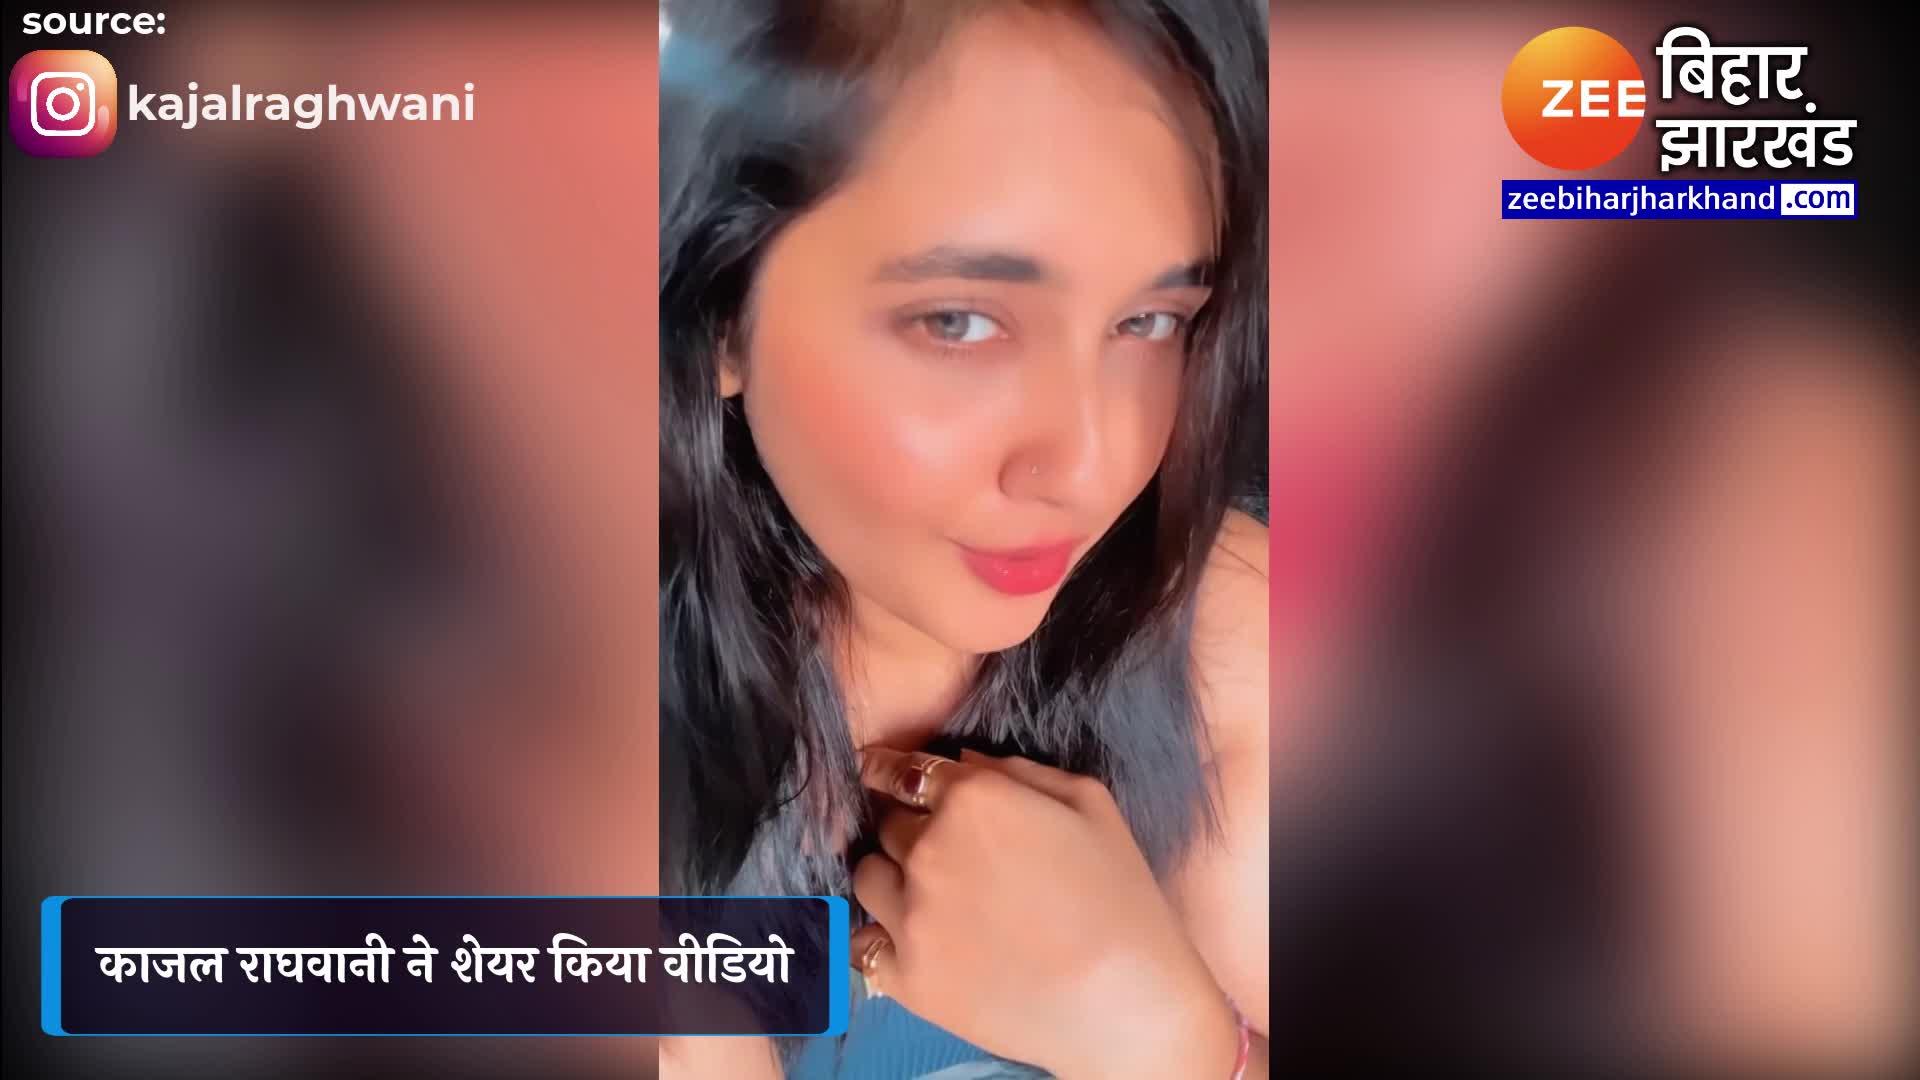 Kajal Kajal Raghwanixvideos - Kajal Raghwani publicly expressed her love video viral | à¤•à¤¾à¤œà¤² à¤°à¤¾à¤˜à¤µà¤¾à¤¨à¥€ à¤¨à¥‡  à¤¸à¤°à¥‡à¤†à¤® à¤•à¤° à¤¦à¤¿à¤¯à¤¾ à¤ªà¥à¤¯à¤¾à¤° à¤•à¤¾ à¤‡à¤œà¤¹à¤¾à¤°, à¤µà¥€à¤¡à¤¿à¤¯à¥‹ à¤µà¤¾à¤¯à¤°à¤². | Zee News Hindi